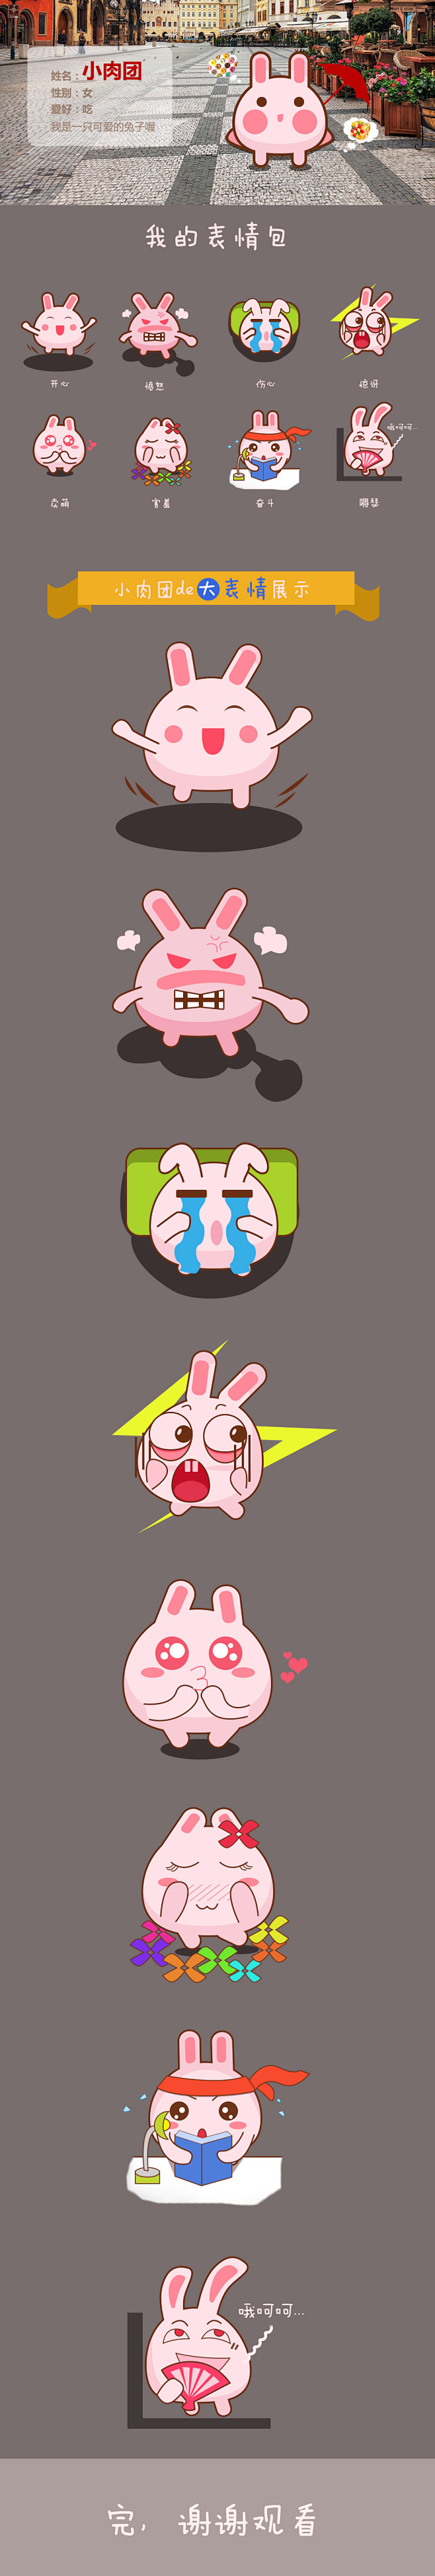 可爱兔子表情包UI设计